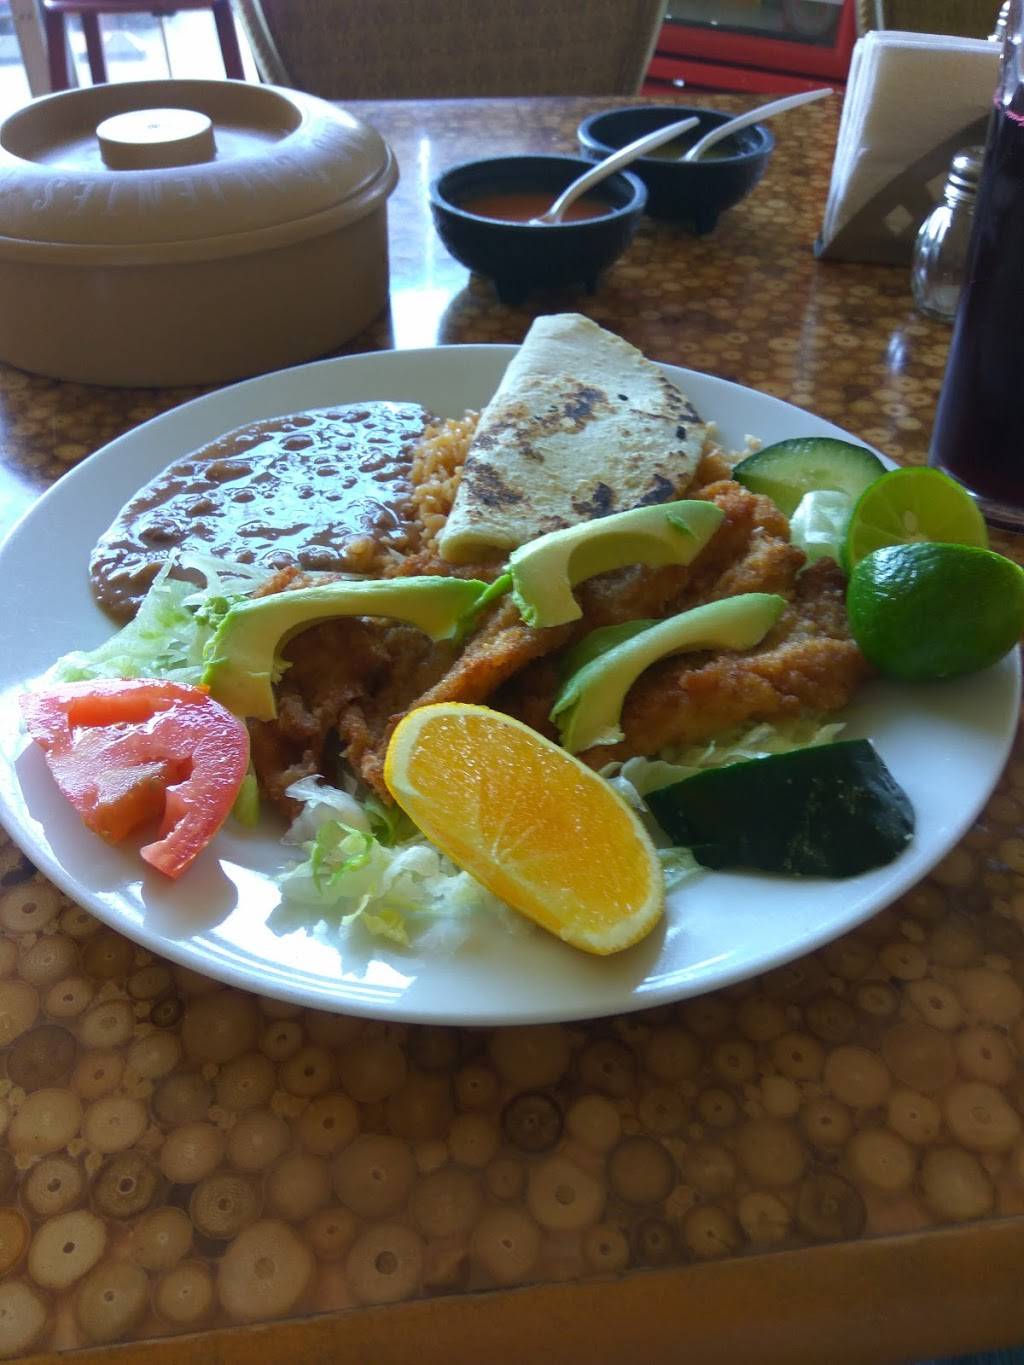 Restaurante Los Magueyes | Blvd. Diaz Ordaz 1668, Lomas de la Presa, 22125 Tijuana, B.C., Mexico | Phone: 664 645 9629